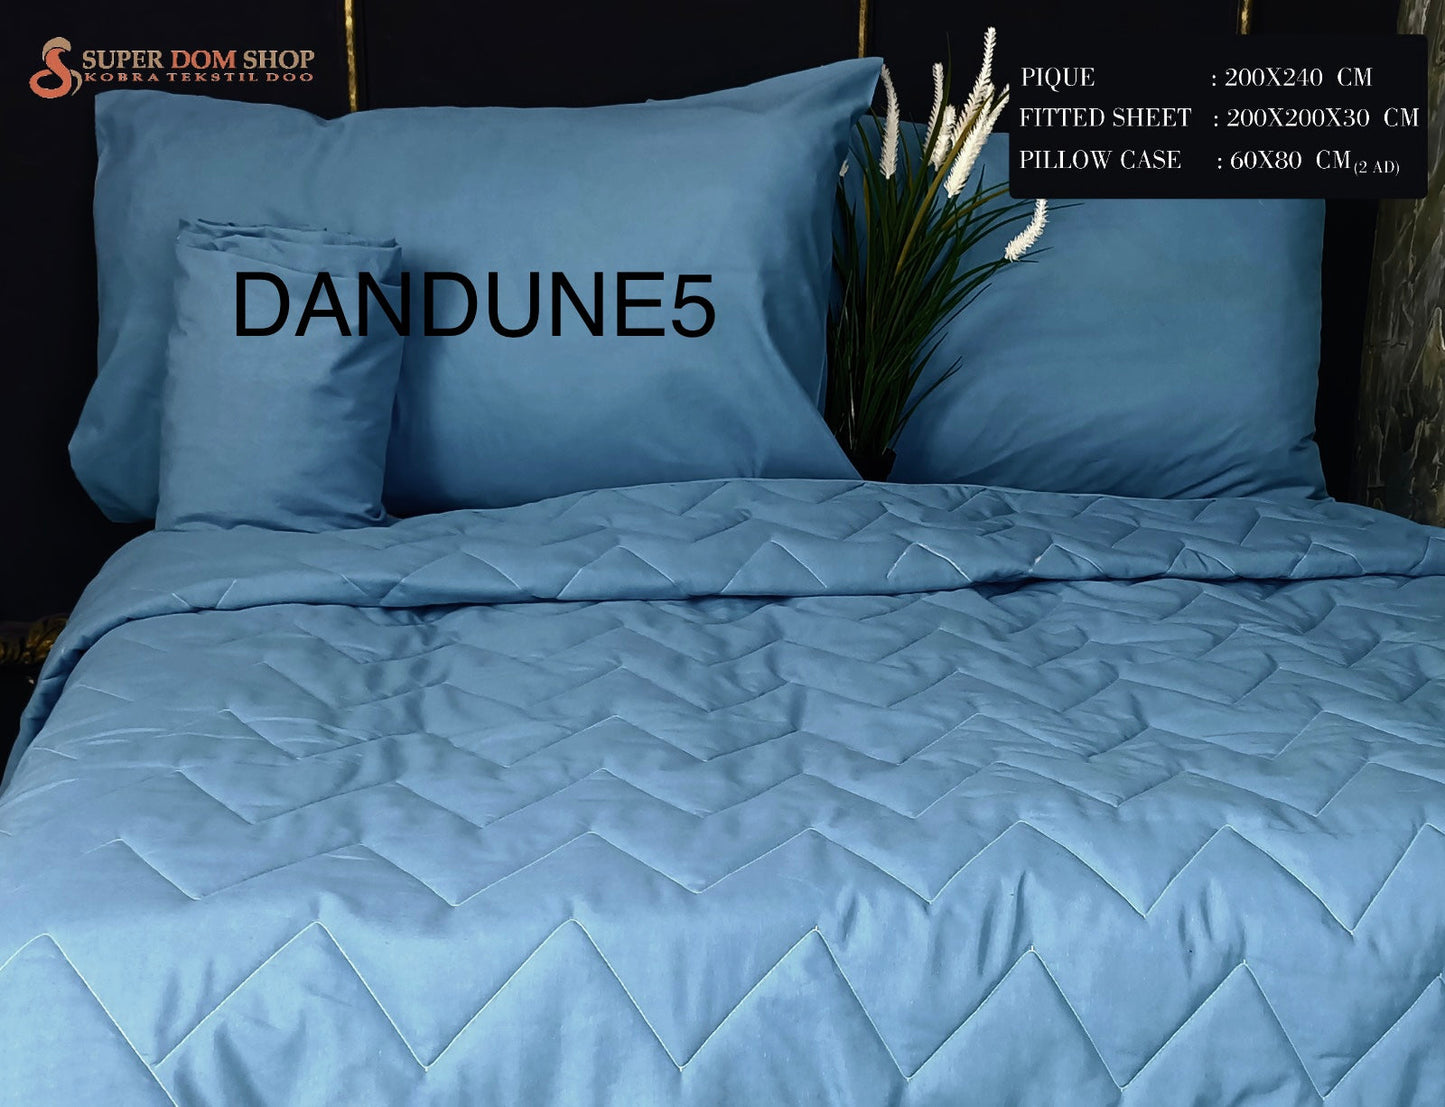 DANDUNE komplet (DANDUNE5) Tekstil Outlet